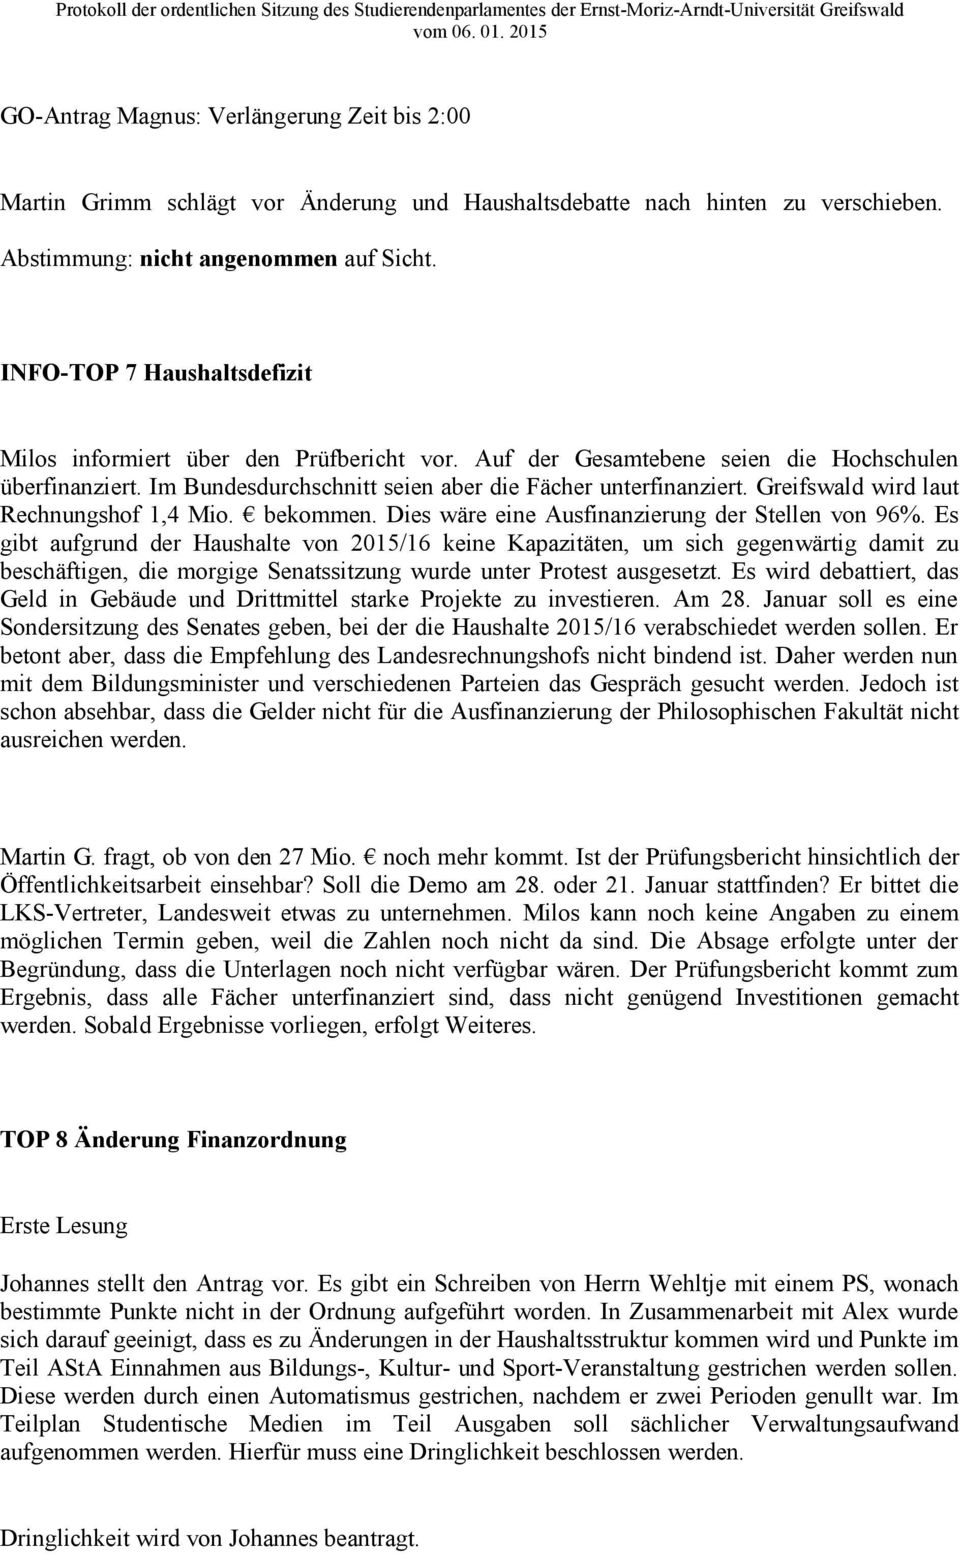 Greifswald wird laut Rechnungshof 1,4 Mio. bekommen. Dies wäre eine Ausfinanzierung der Stellen von 96%.